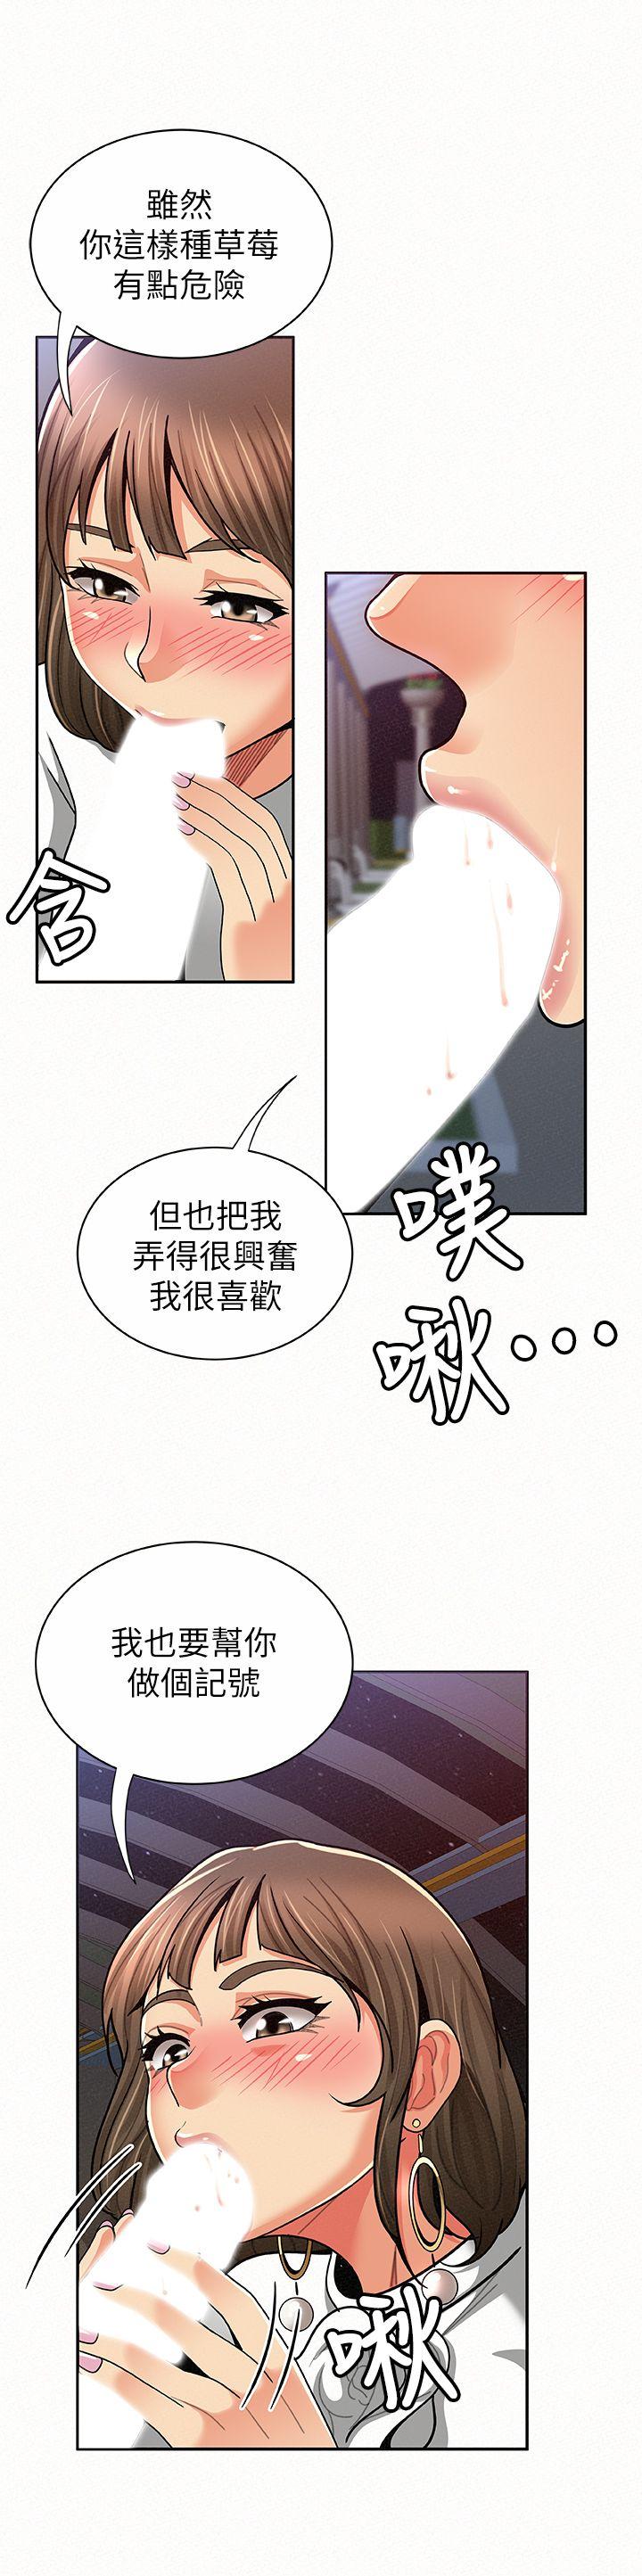 韩国污漫画 報告夫人 第15话-排长夫人的实战教学 12